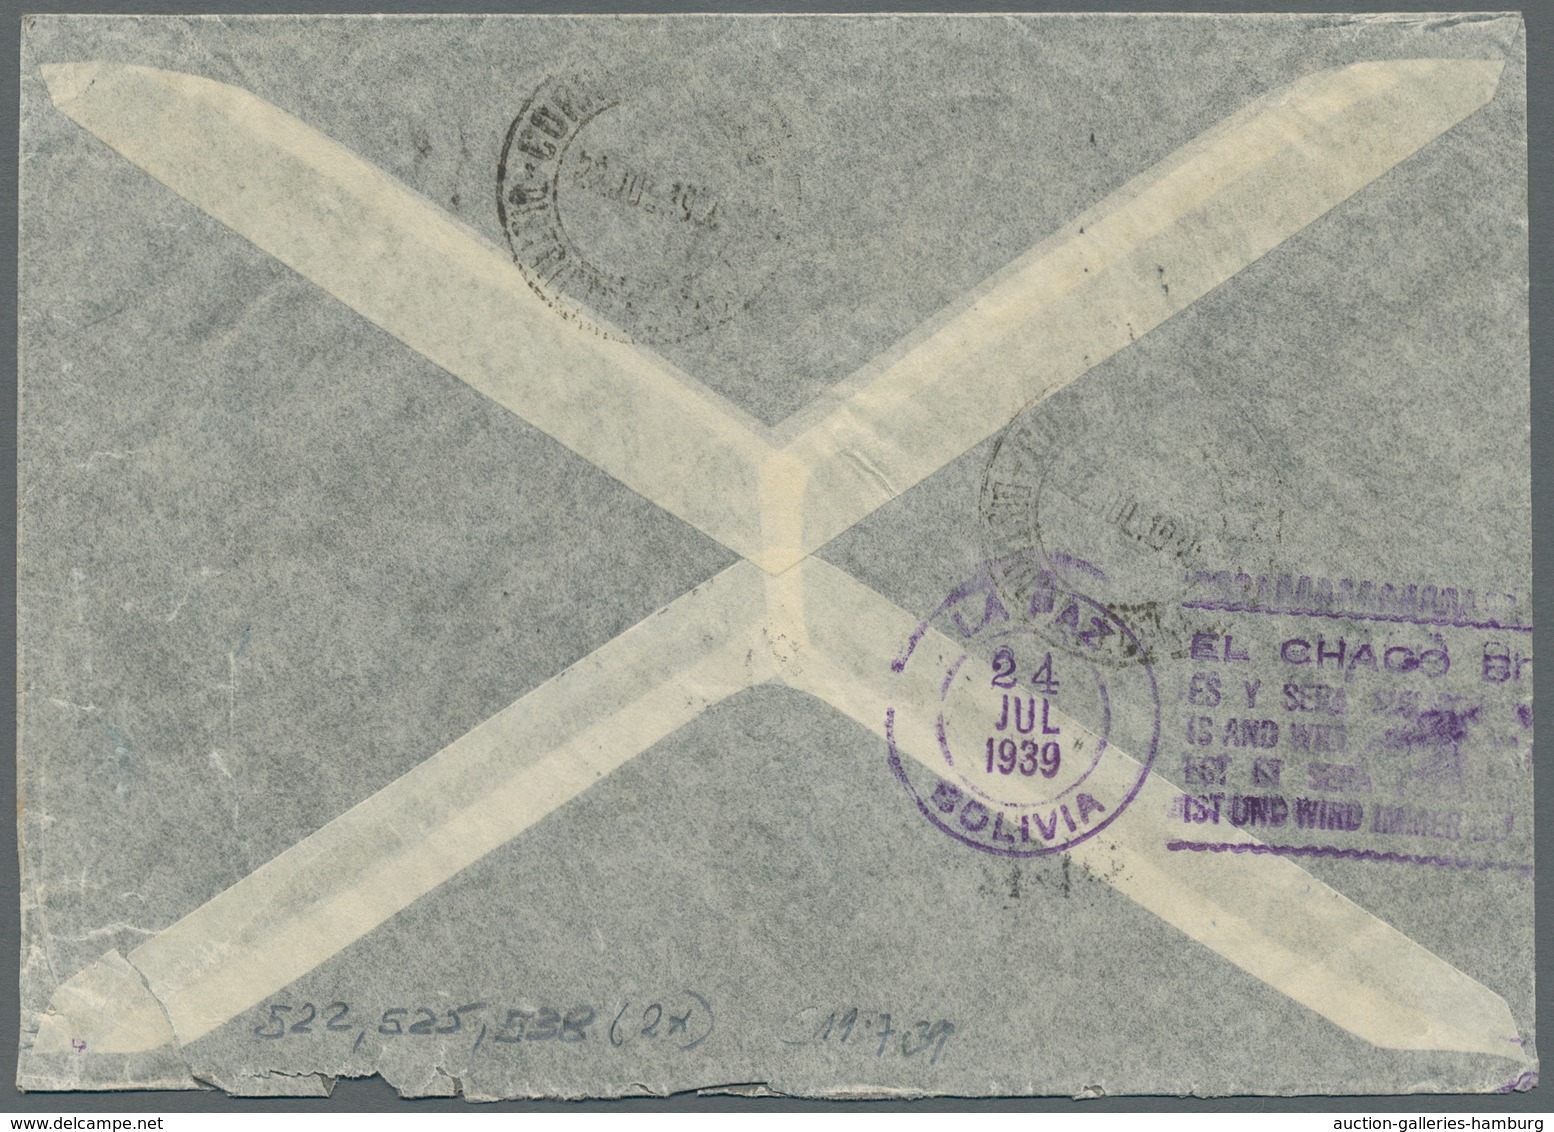 Deutsches Reich: 1928-1939, Bestand von 8 Luftpostbriefen welche alle nach Südamerika gelaufen sind,